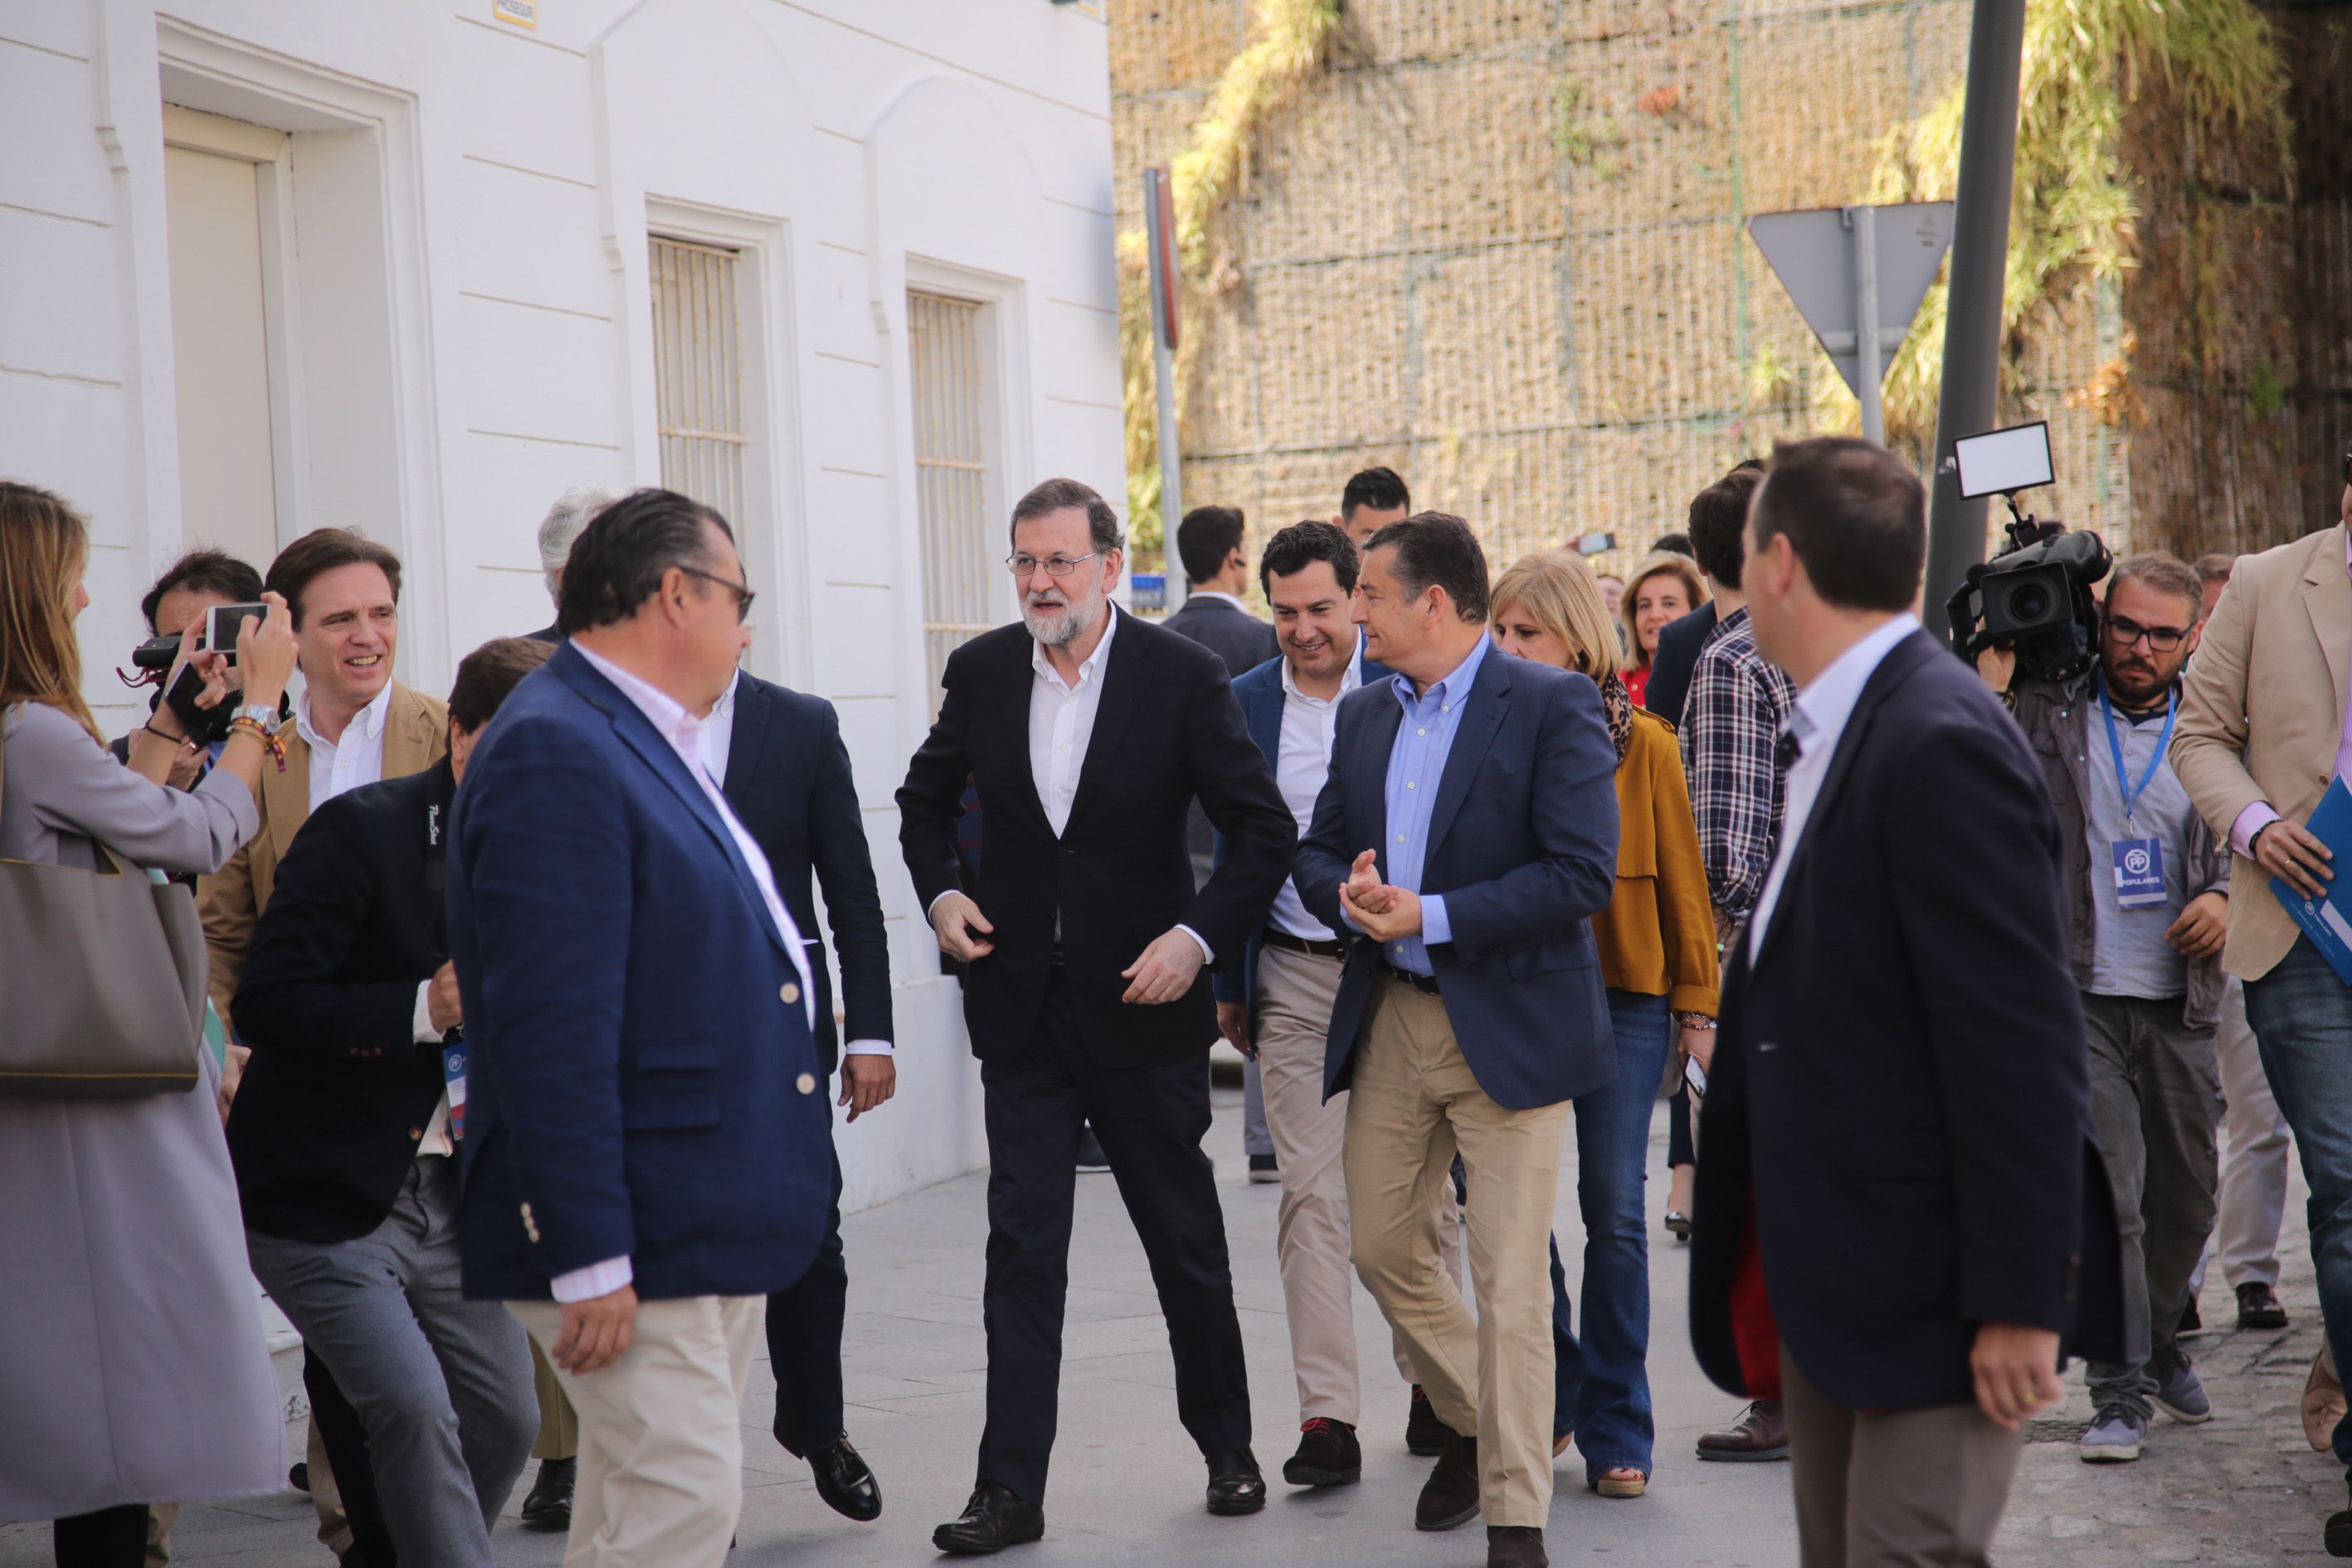 Mariano Rajoy, rodeado de cargos populares, a su llegada a San Agustín. Al fondo, el jardín vertical totalmente seco. FOTO: JUAN CARLOS TORO.